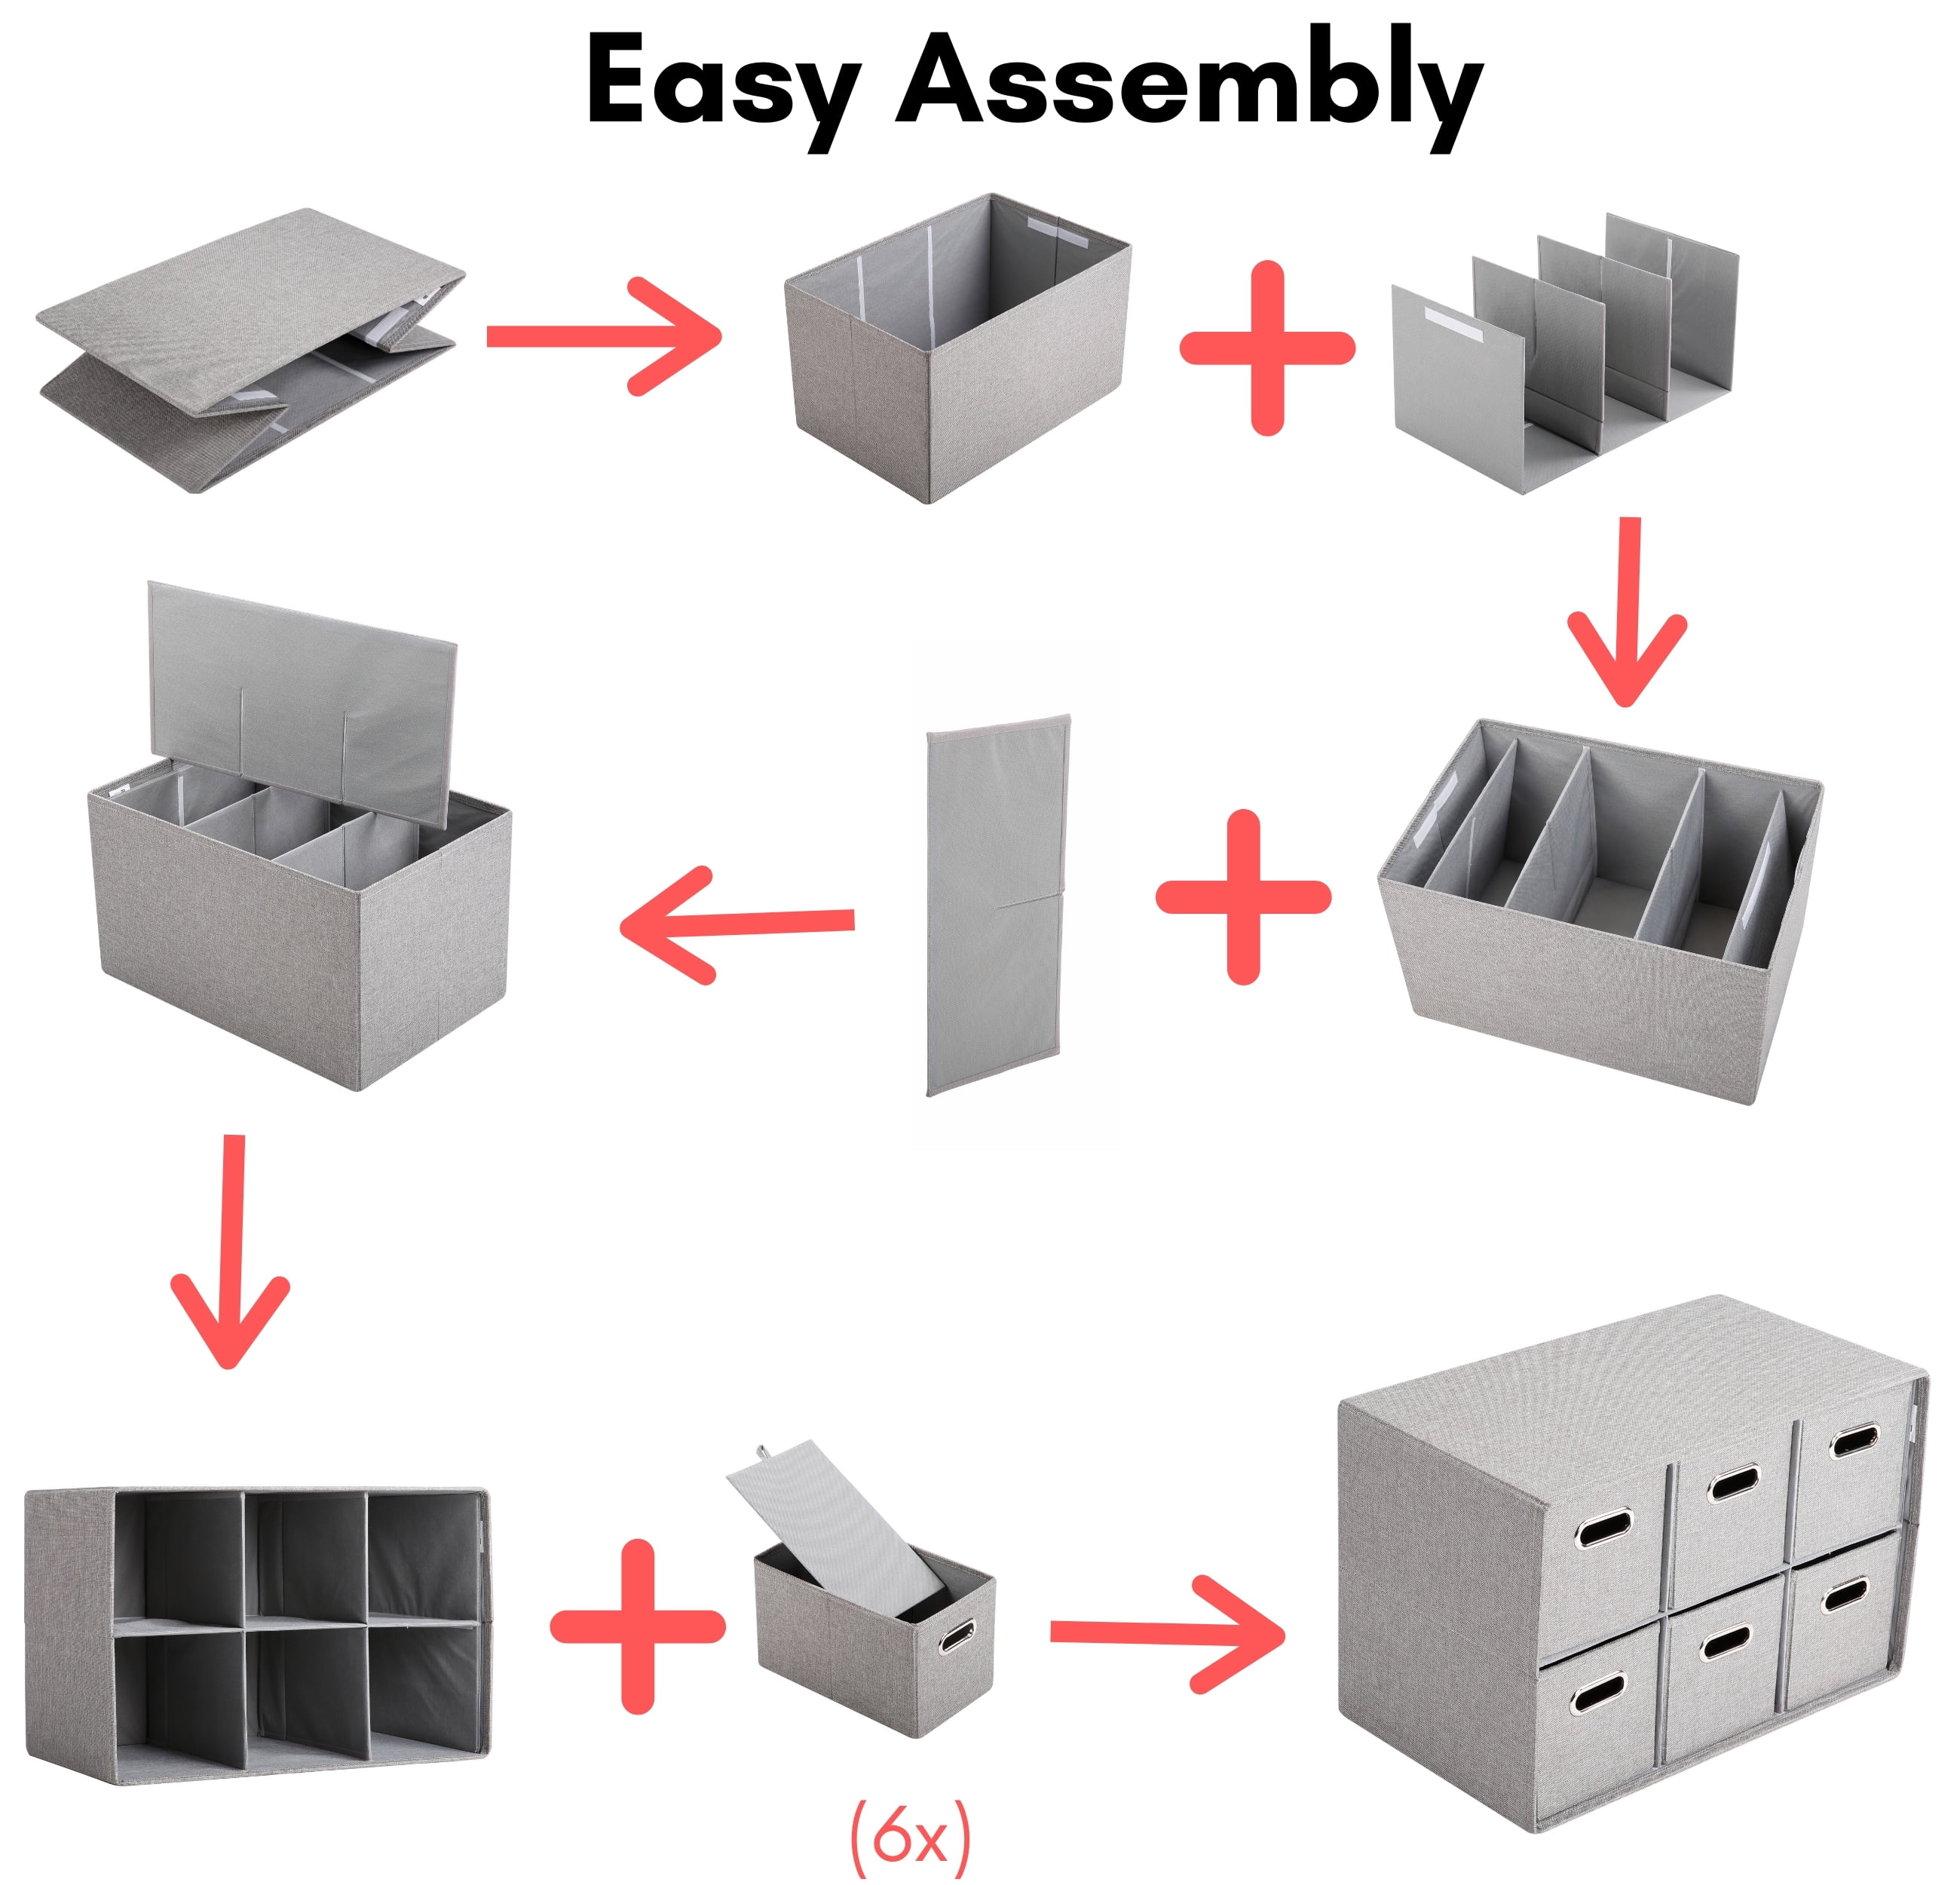 BirdRock Home Linen Cube Organizer Shelf with 6 Storage Bins - Cream